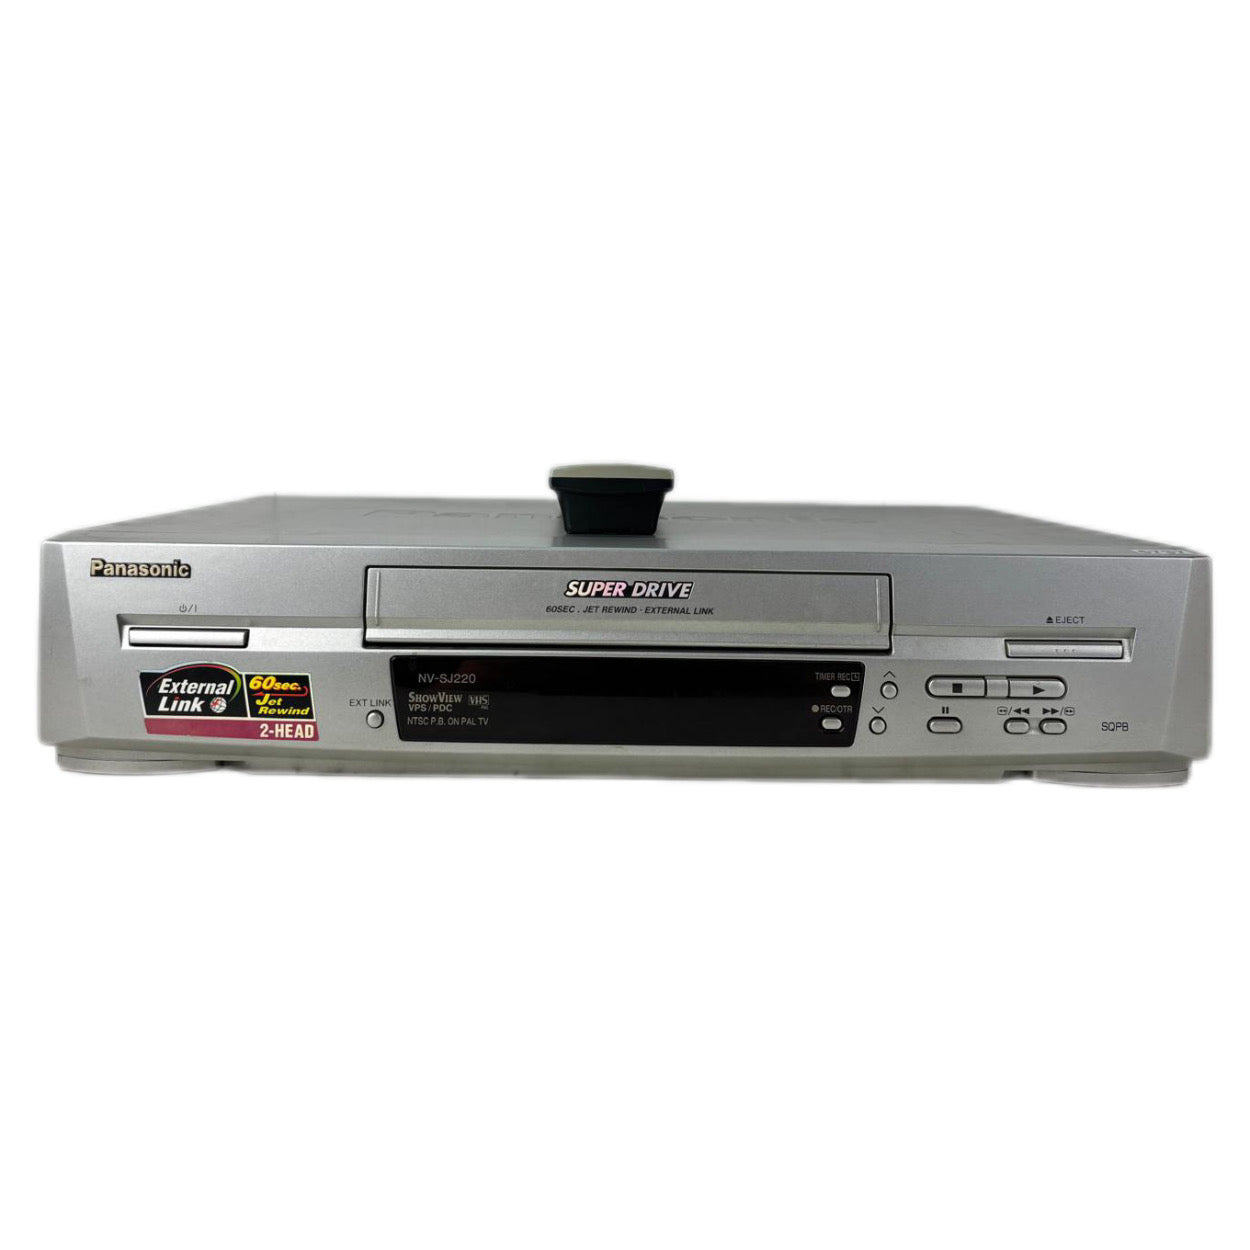 Panasonic NV-SJ220 Super Drive Video Cassette Recorder